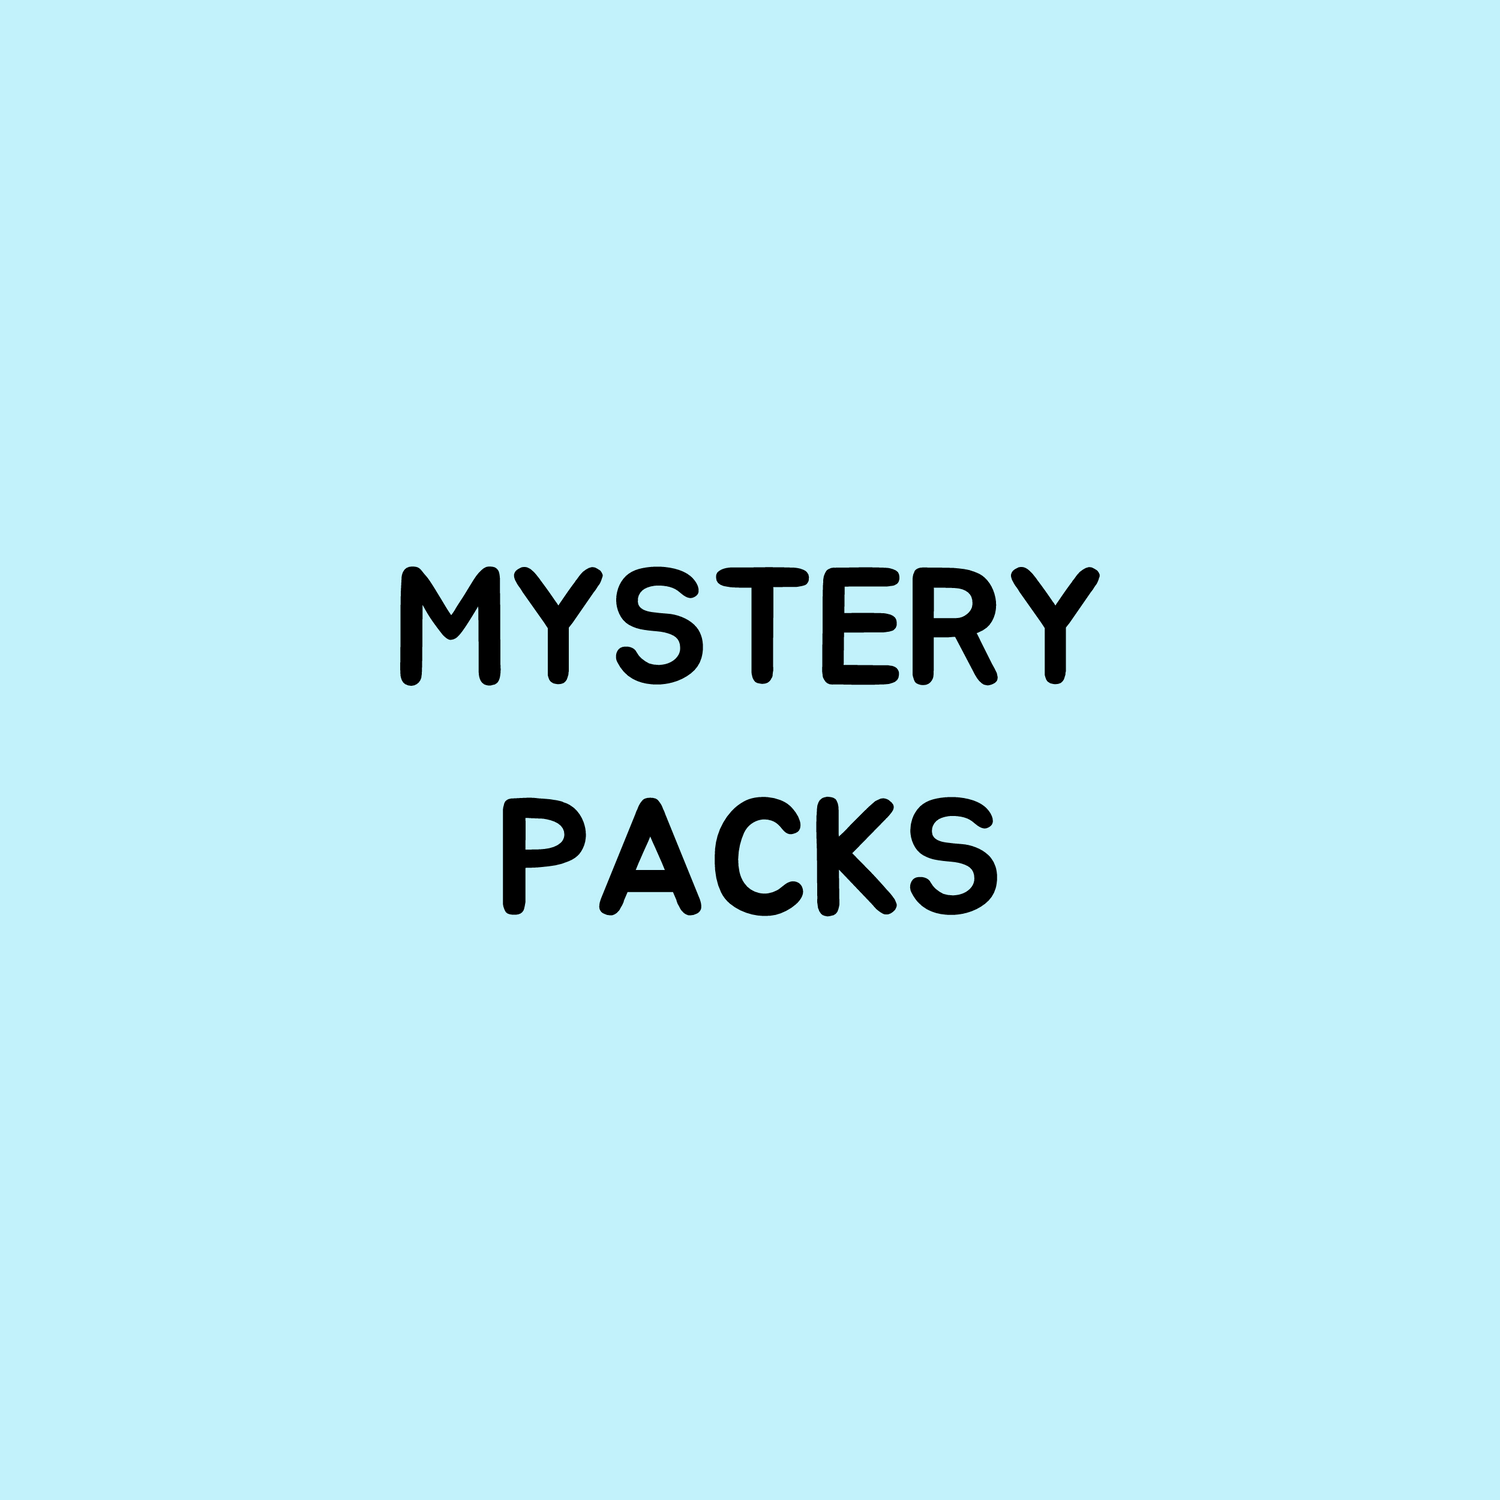 Mystery packs